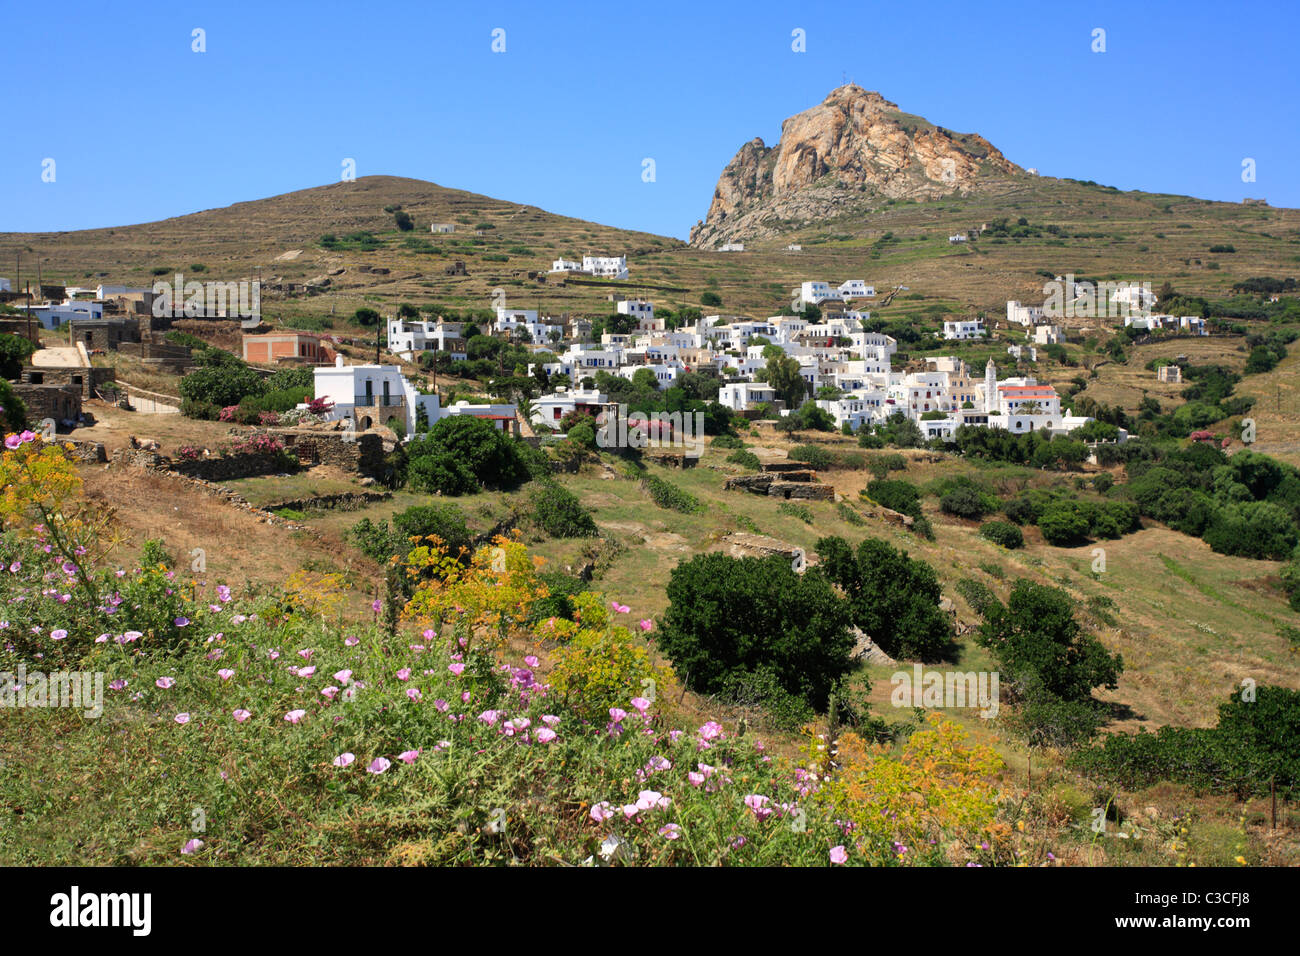 Village de montagne de l'île grecque de Tinos Cyclades Grèce UE Union Européenne Europe Banque D'Images